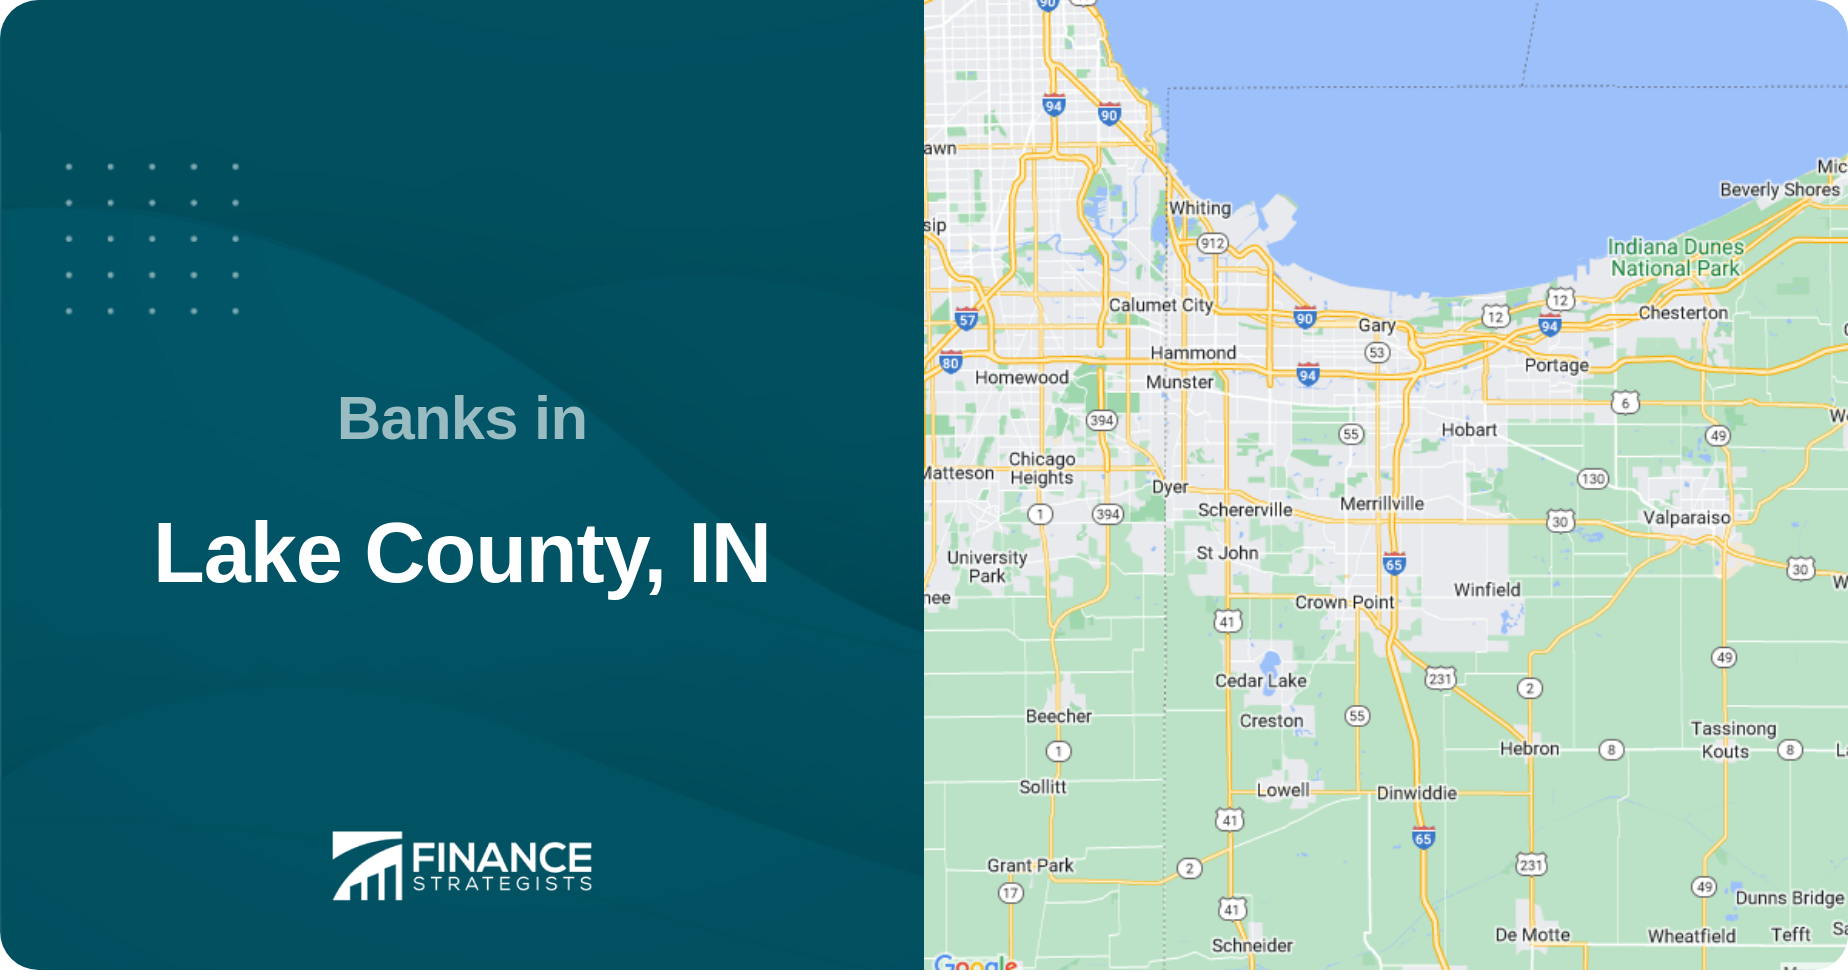 Banks in Lake County, IN